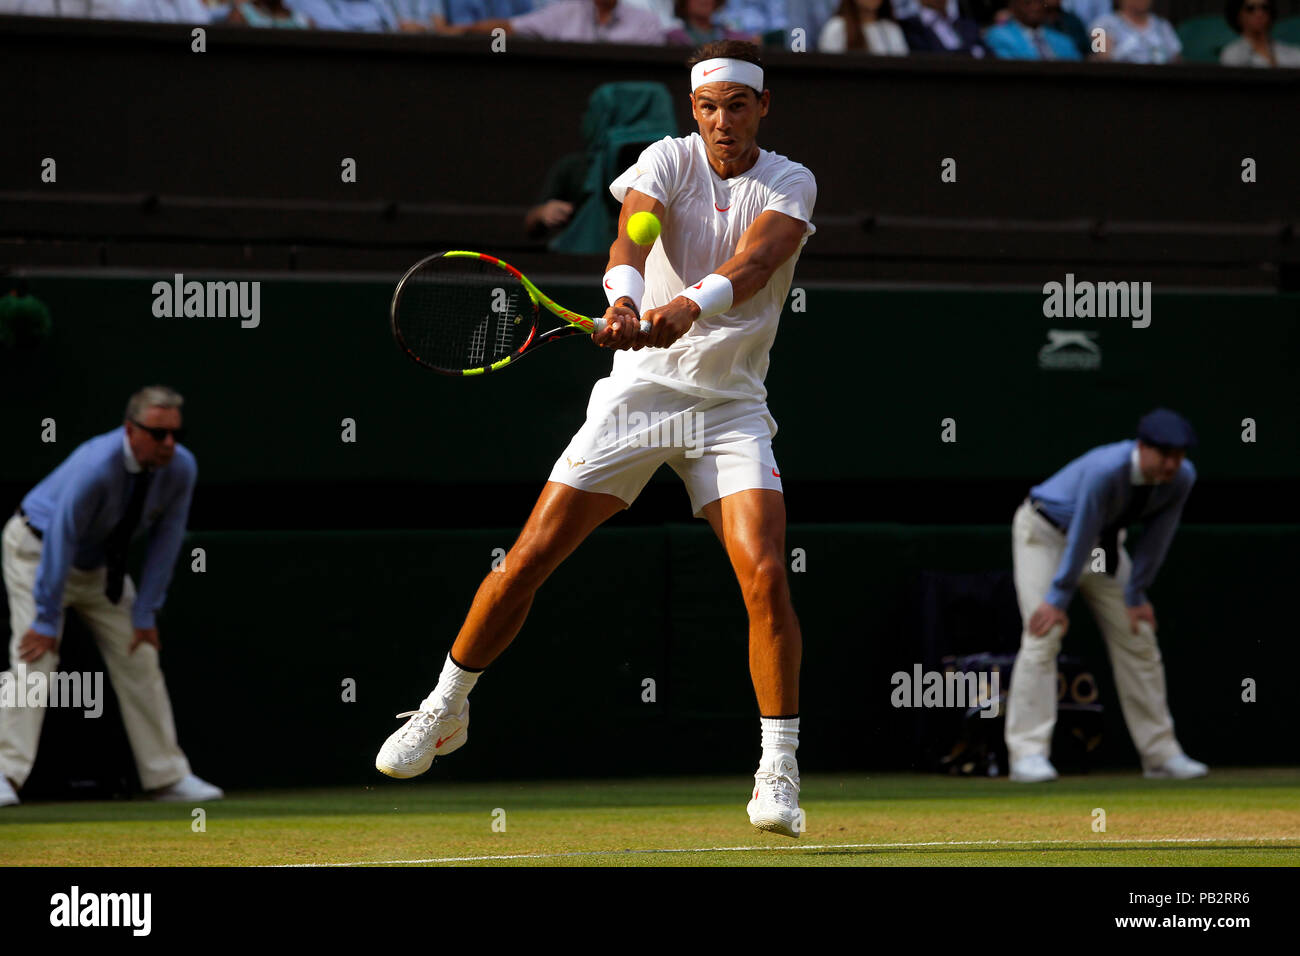 Londres, Inglaterra - 9 de julio de 2018. Tenis Wimbledon: El español Rafael Nadal en acción durante su cuarta ronda partido contra Jiri Vesely de la República Checa. Foto de stock